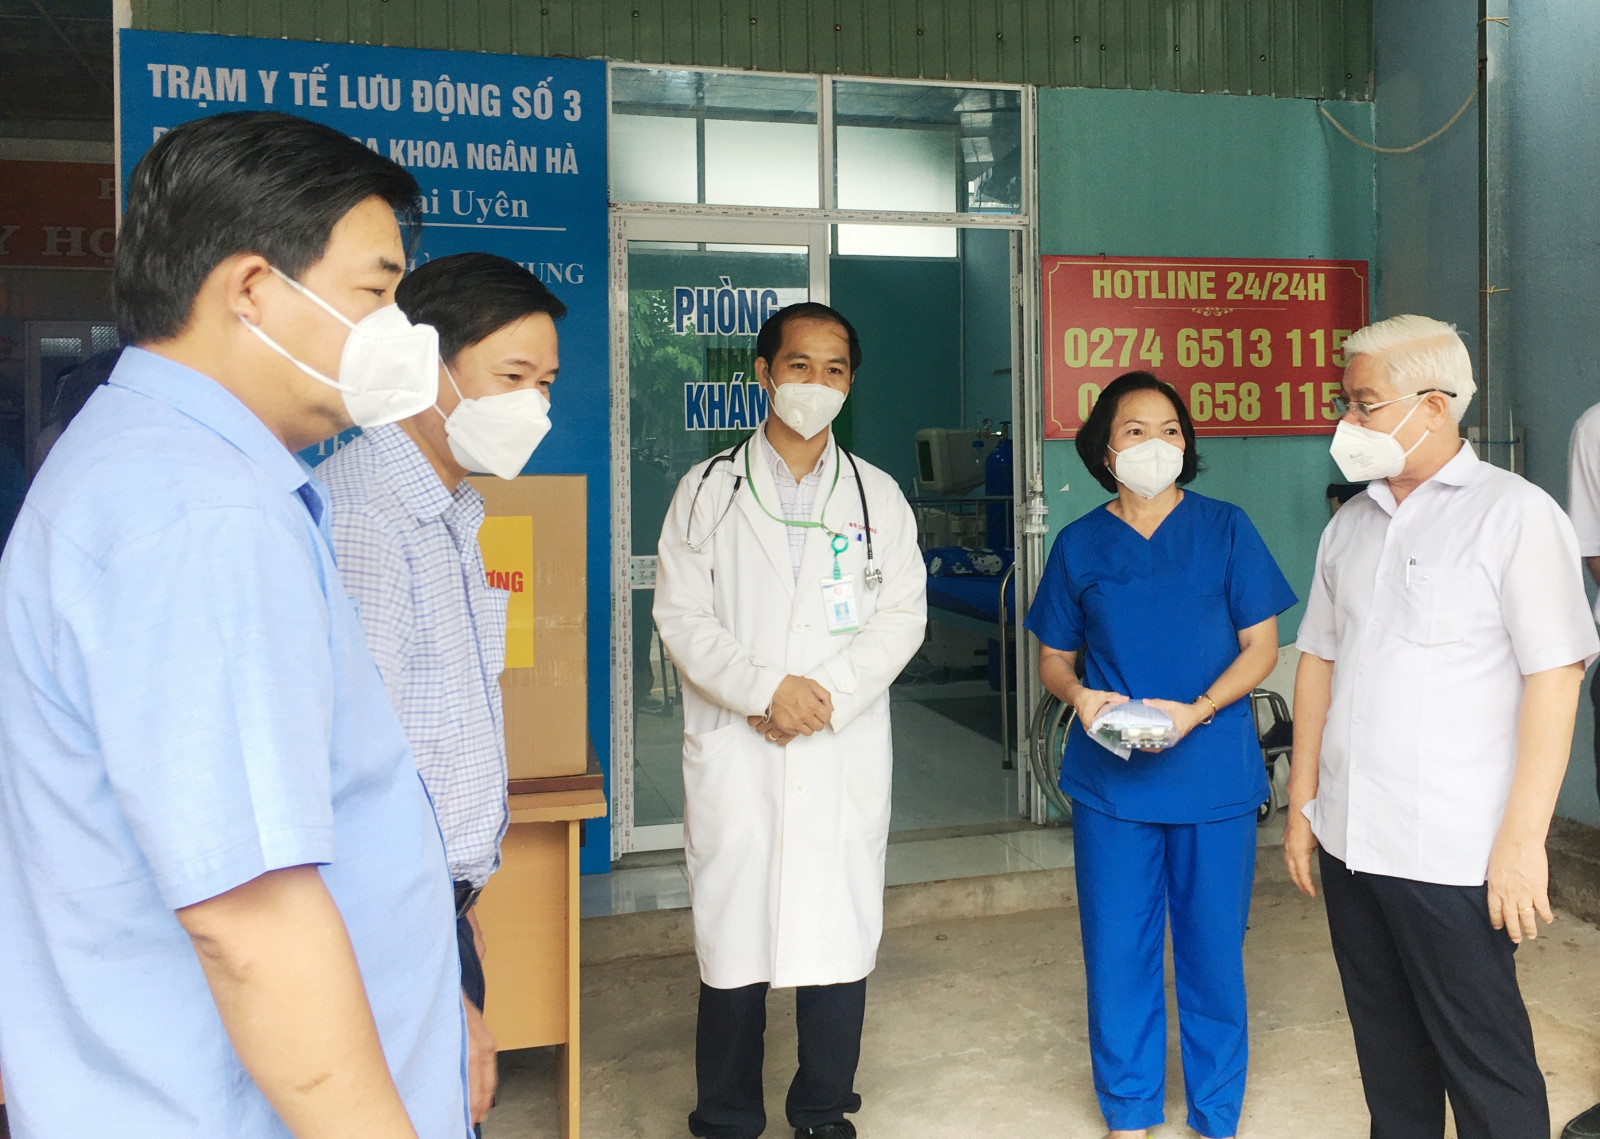 Đoàn công tác Tỉnh ủy khảo sát thực tế tại Trạm Y tế lưu động số 3 (thị trấn Lai Uyên).